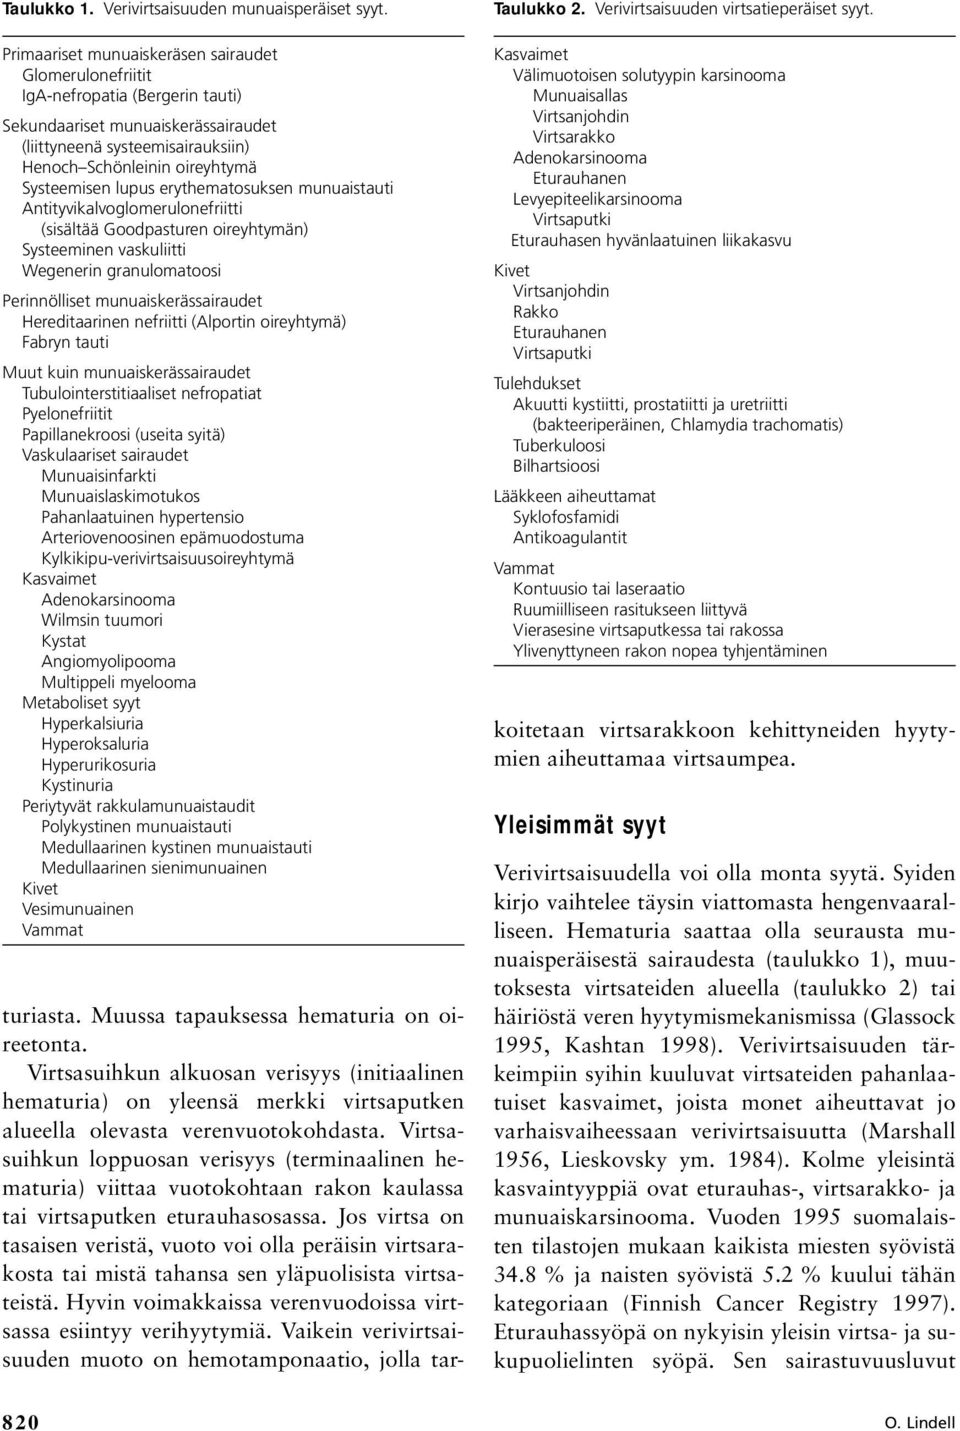 lupus erythematosuksen munuaistauti Antityvikalvoglomerulonefriitti (sisältää Goodpasturen oireyhtymän) Systeeminen vaskuliitti Wegenerin granulomatoosi Perinnölliset munuaiskerässairaudet